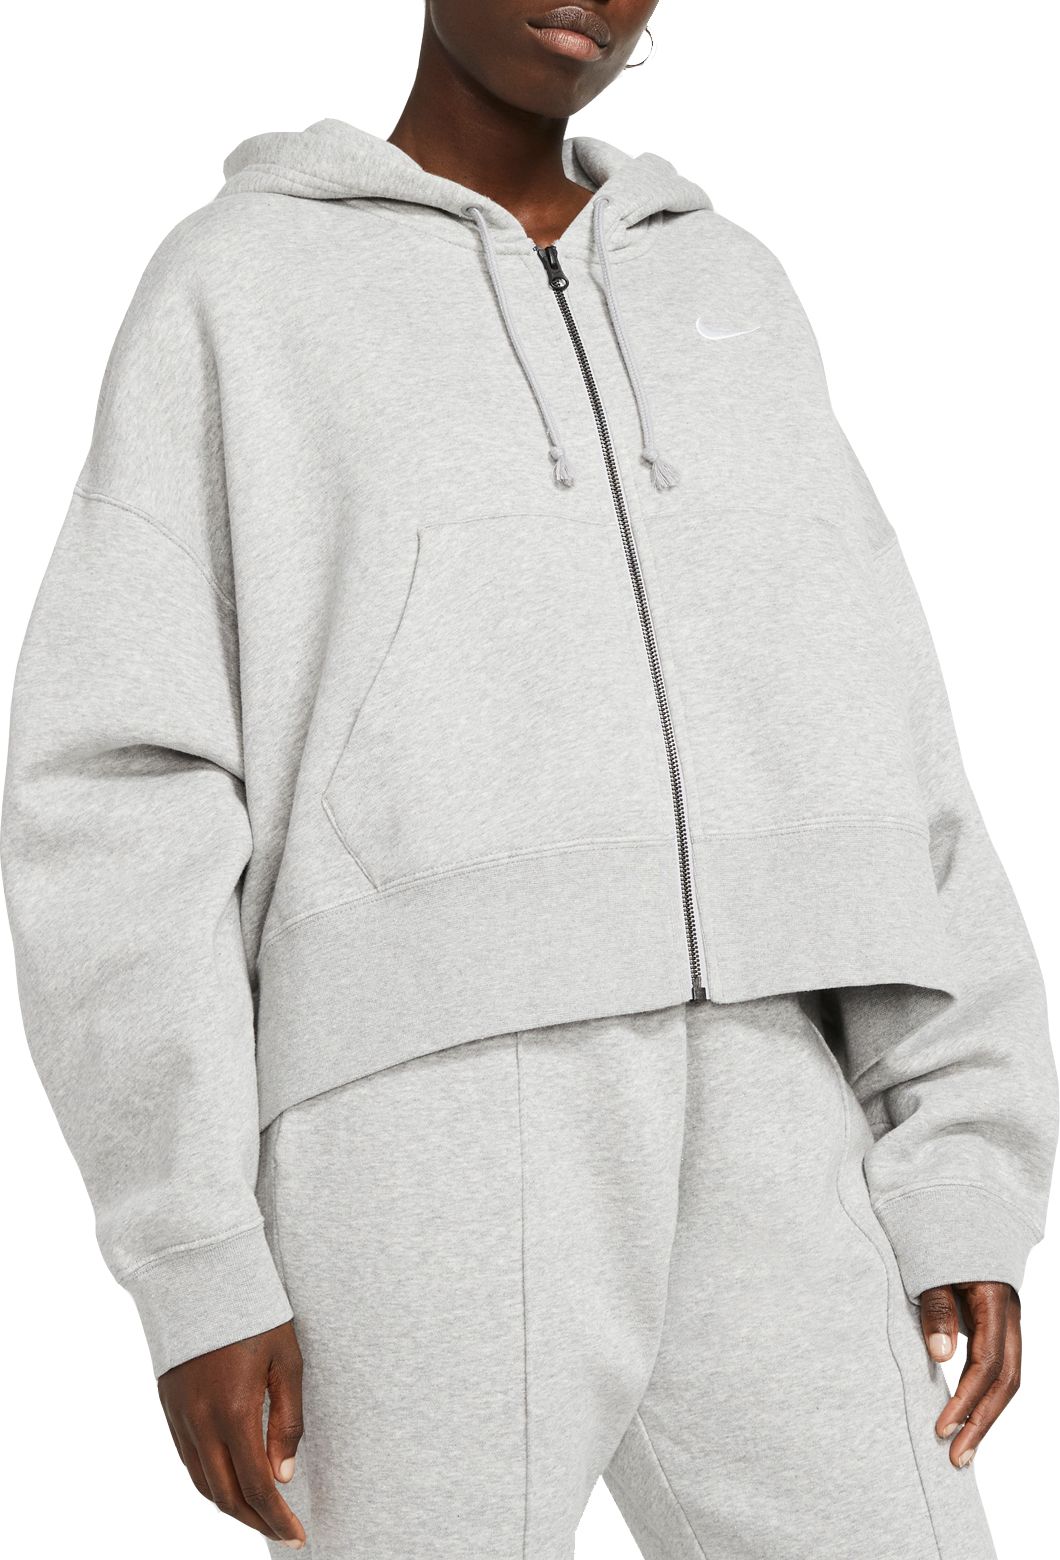 grey nike zip hoodie women's